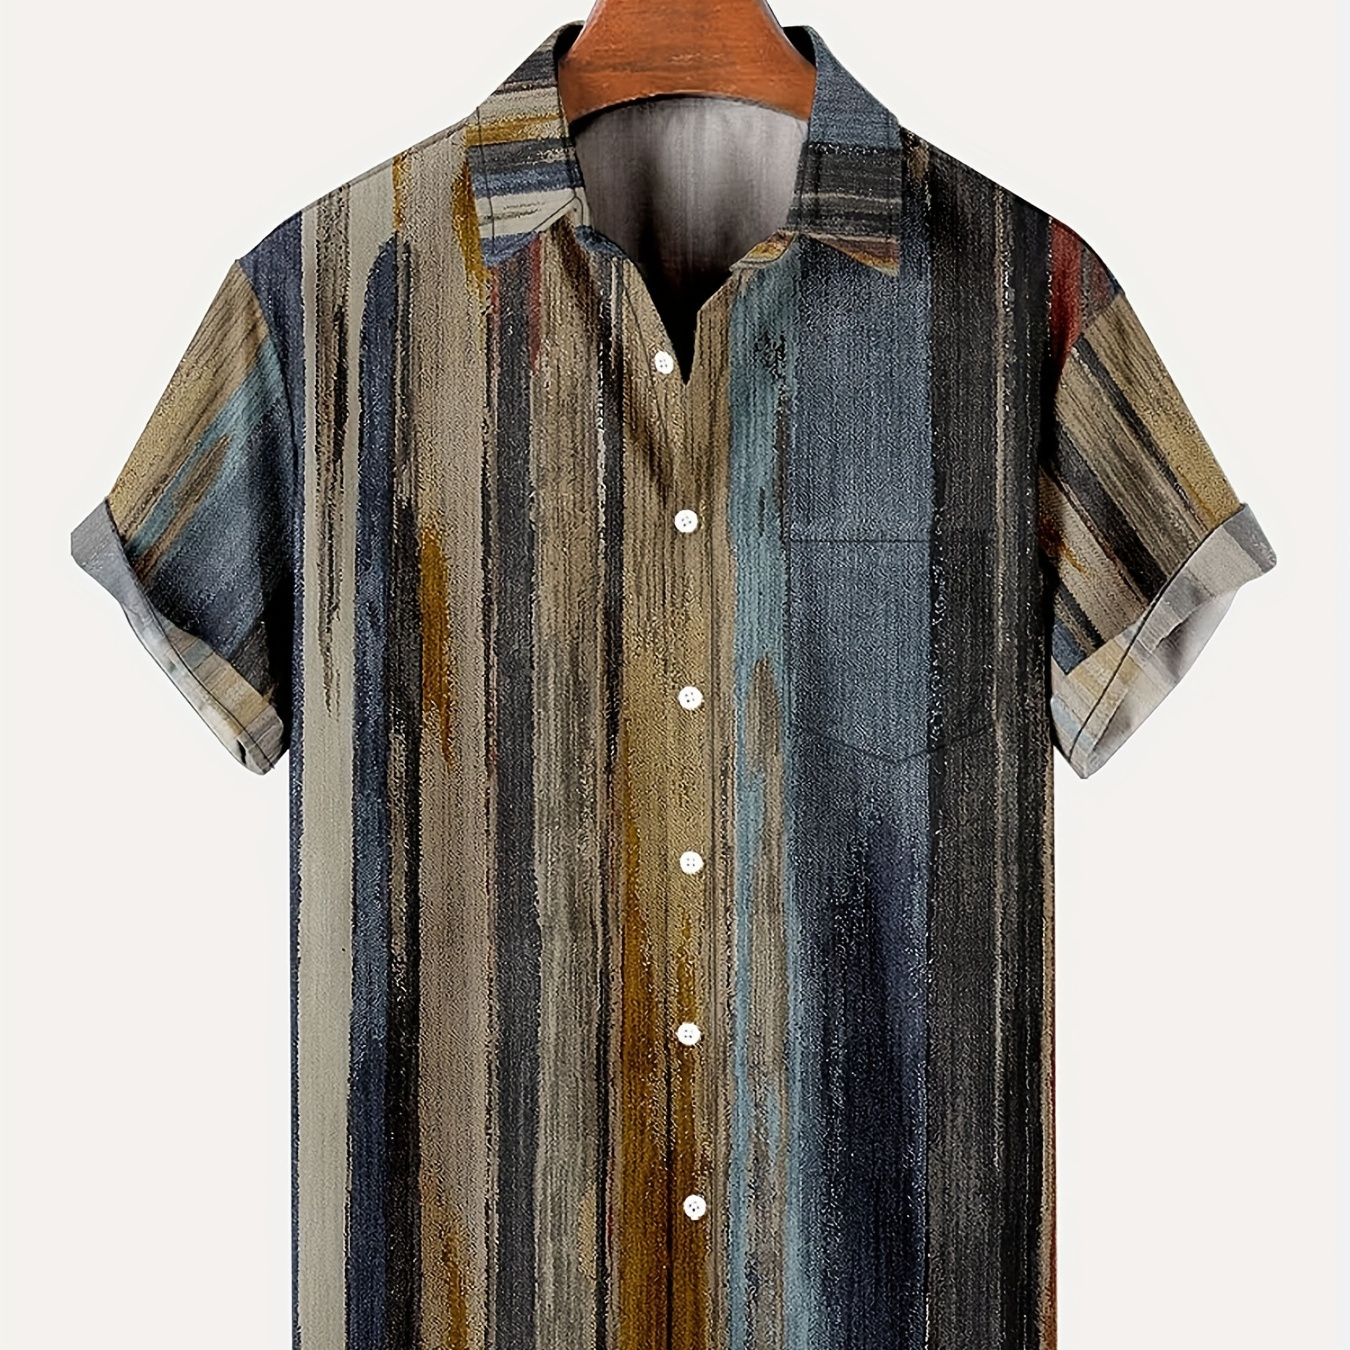 

Vintage Style Stripe Print Men's Casual Short Sleeve Shirt, Men's Shirt For Summer Vacation Resort, Tops For Men, Gift For Men